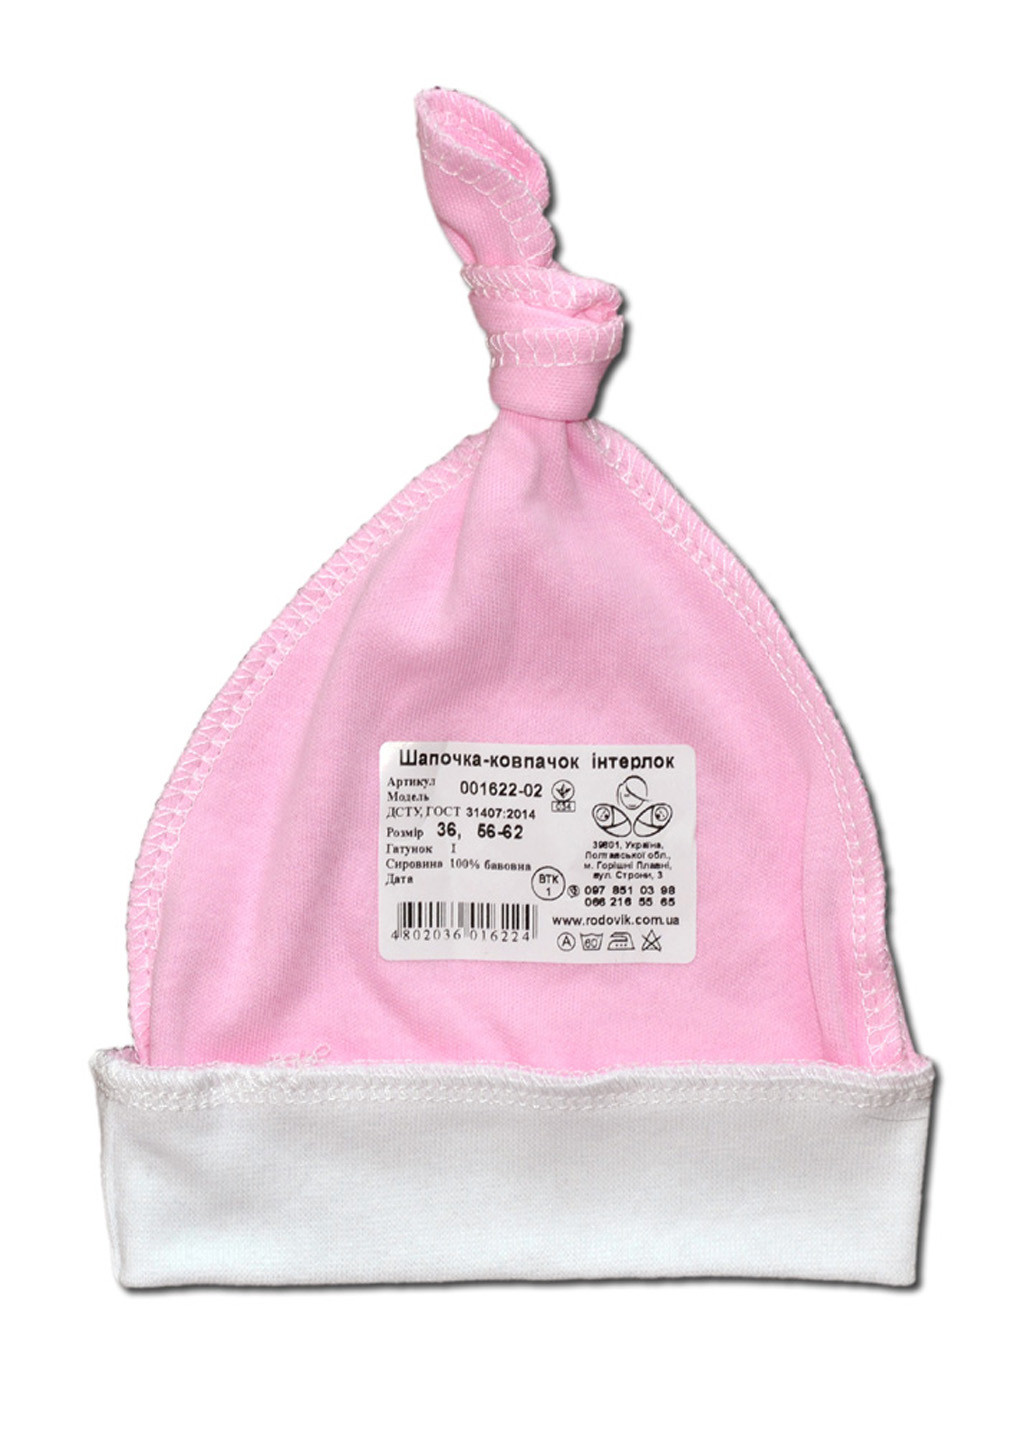 Рожевий демісезонний комплект для новонароджених no7 (5 предметів) тм колекція капітошка рожевий Родовик комплект 07-РК